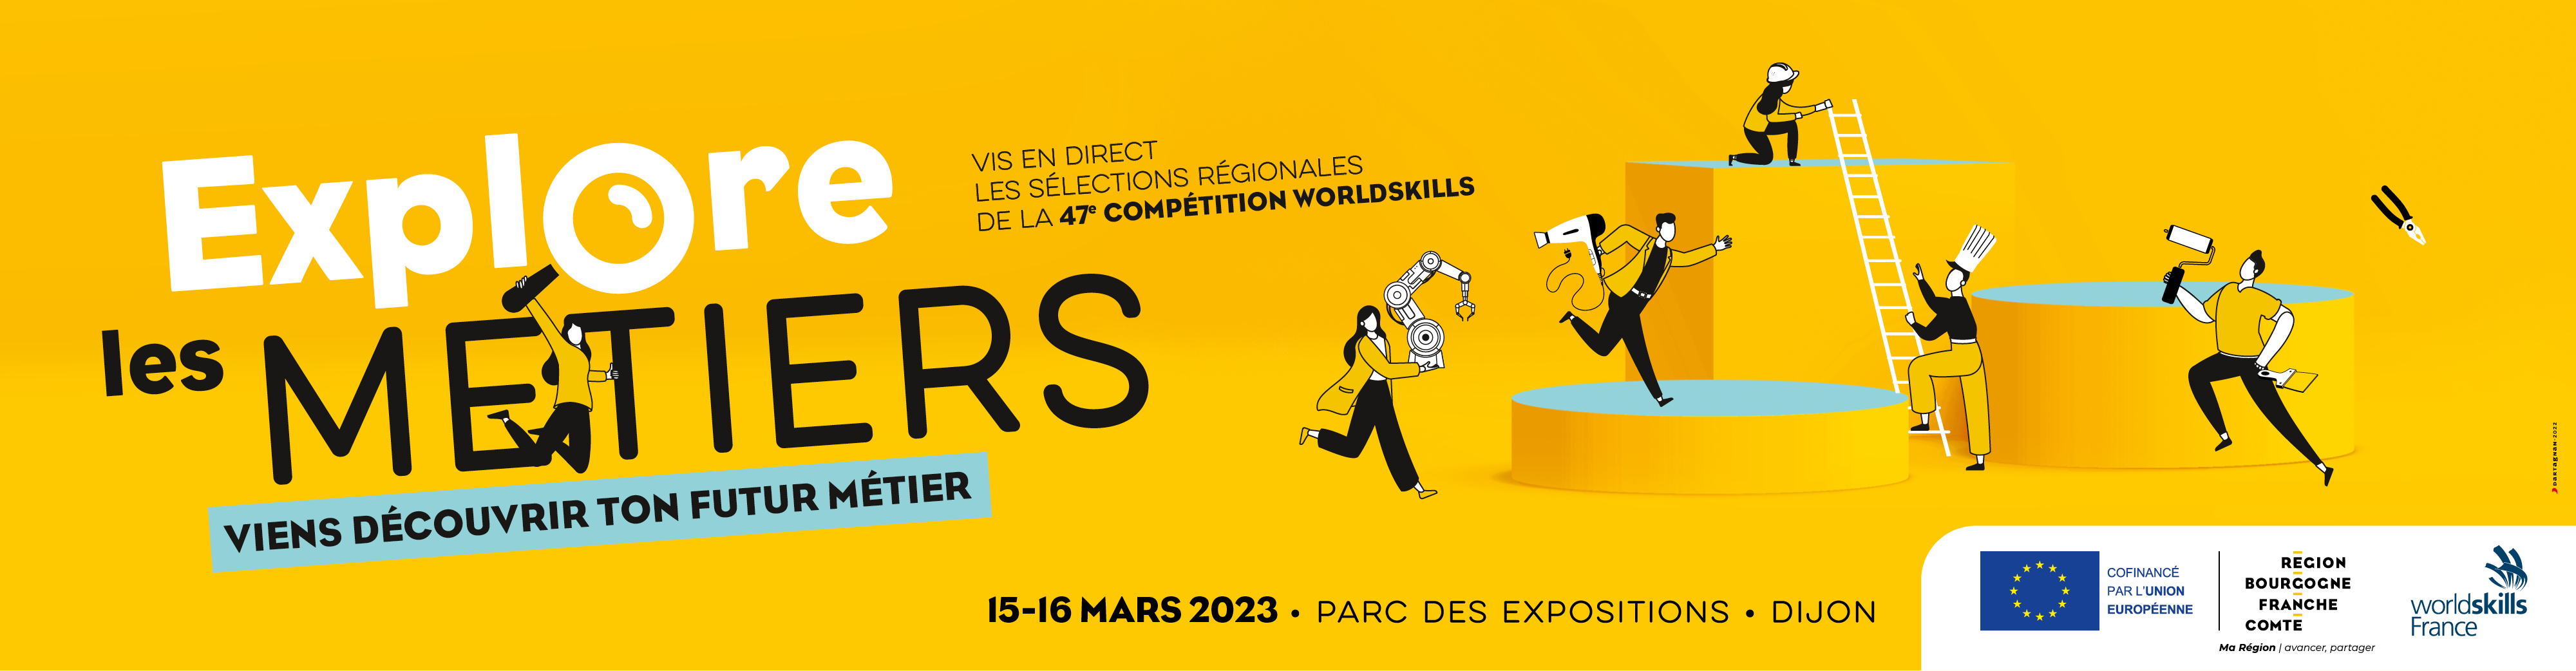 Forum Explore les métiers, mercredi 15 et jeudi 16 mars 2023 à Dijon - DR